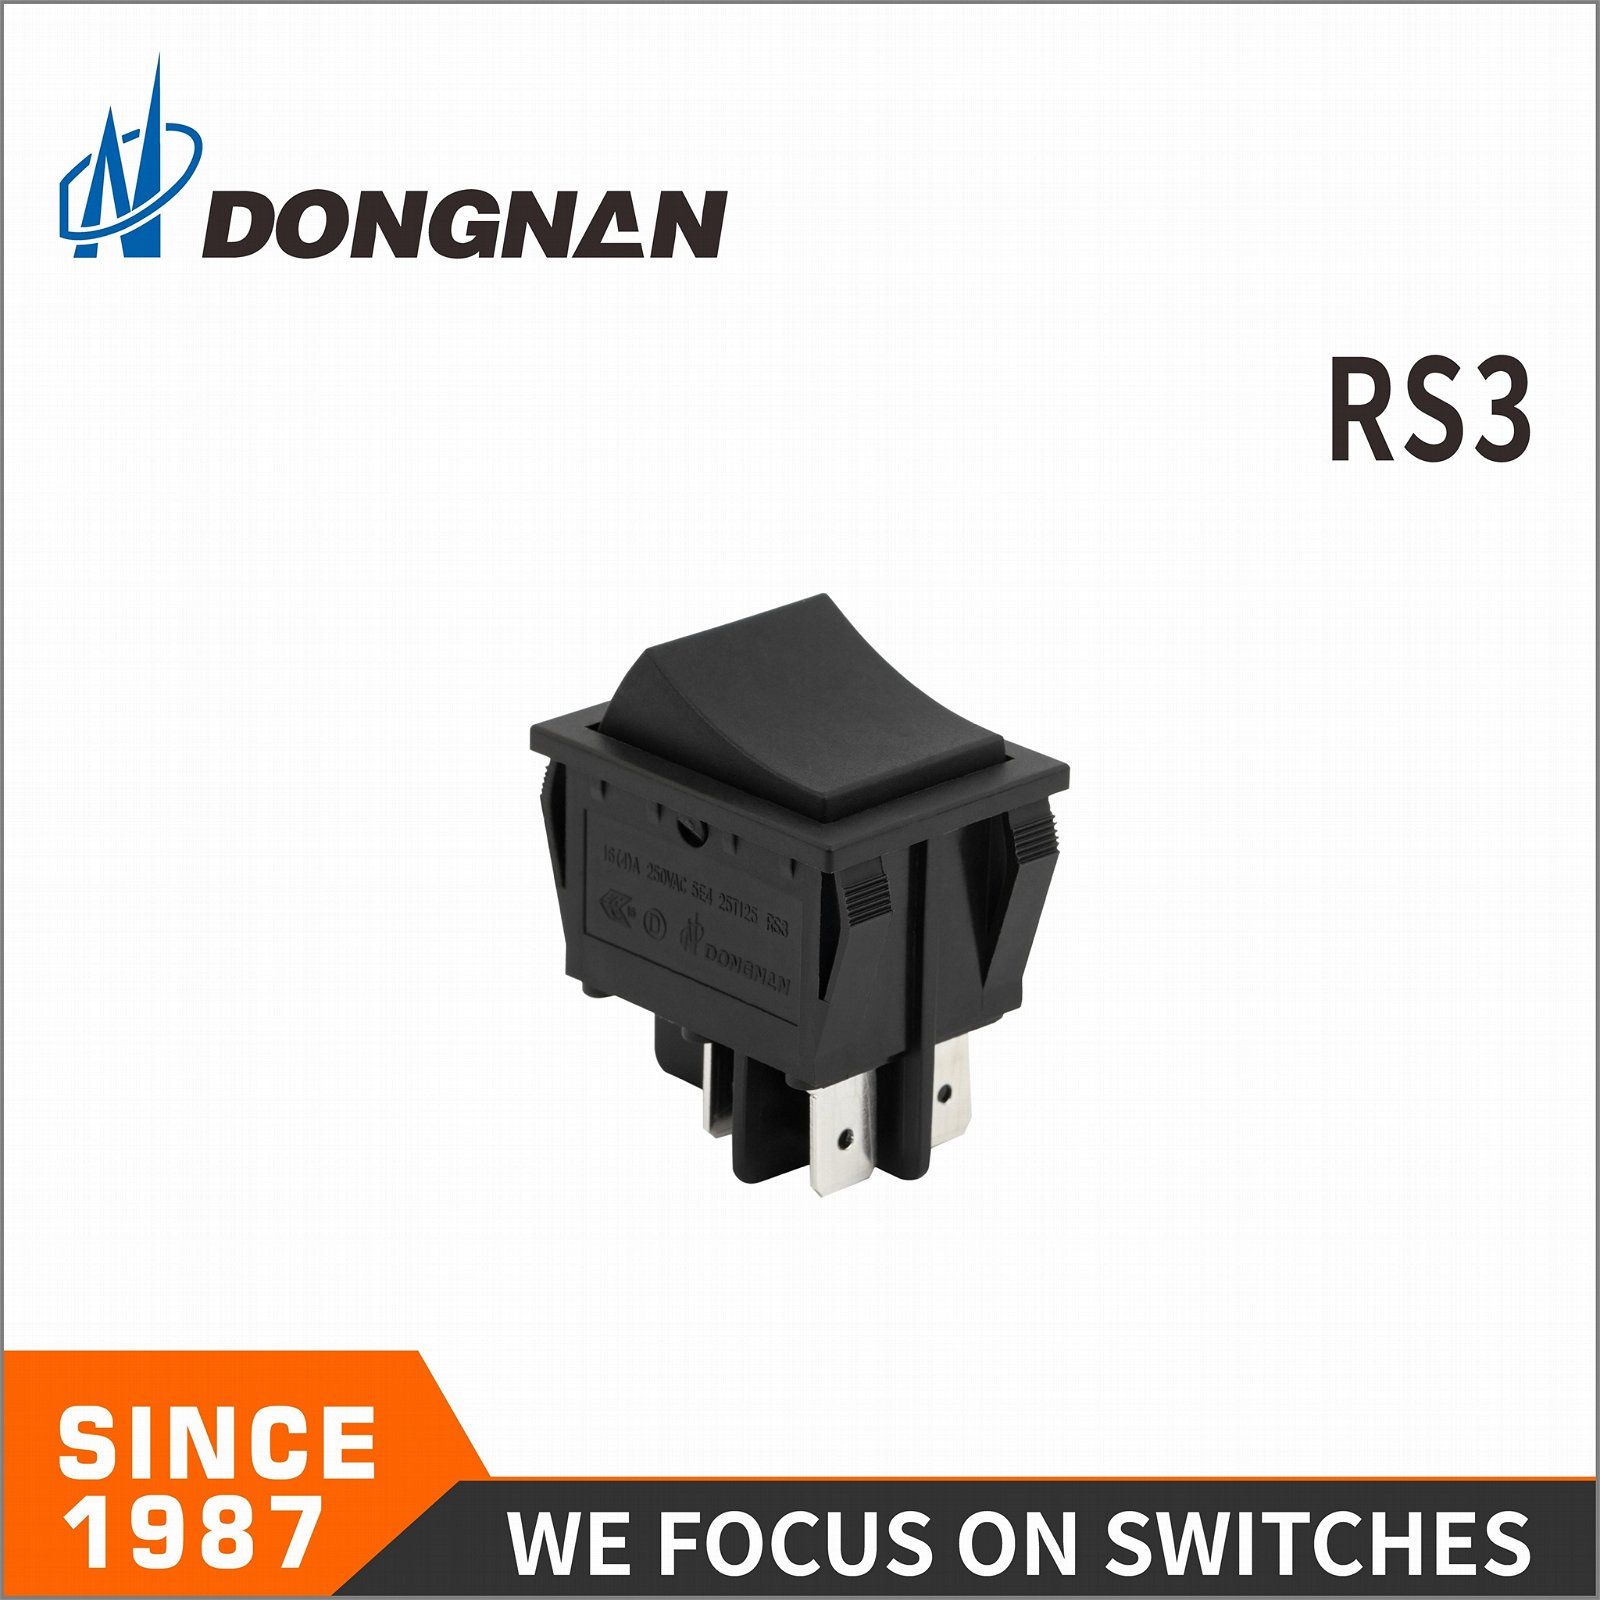 Dongnan Customized RS3 Push Button Electronic Power Rocker Switch 2